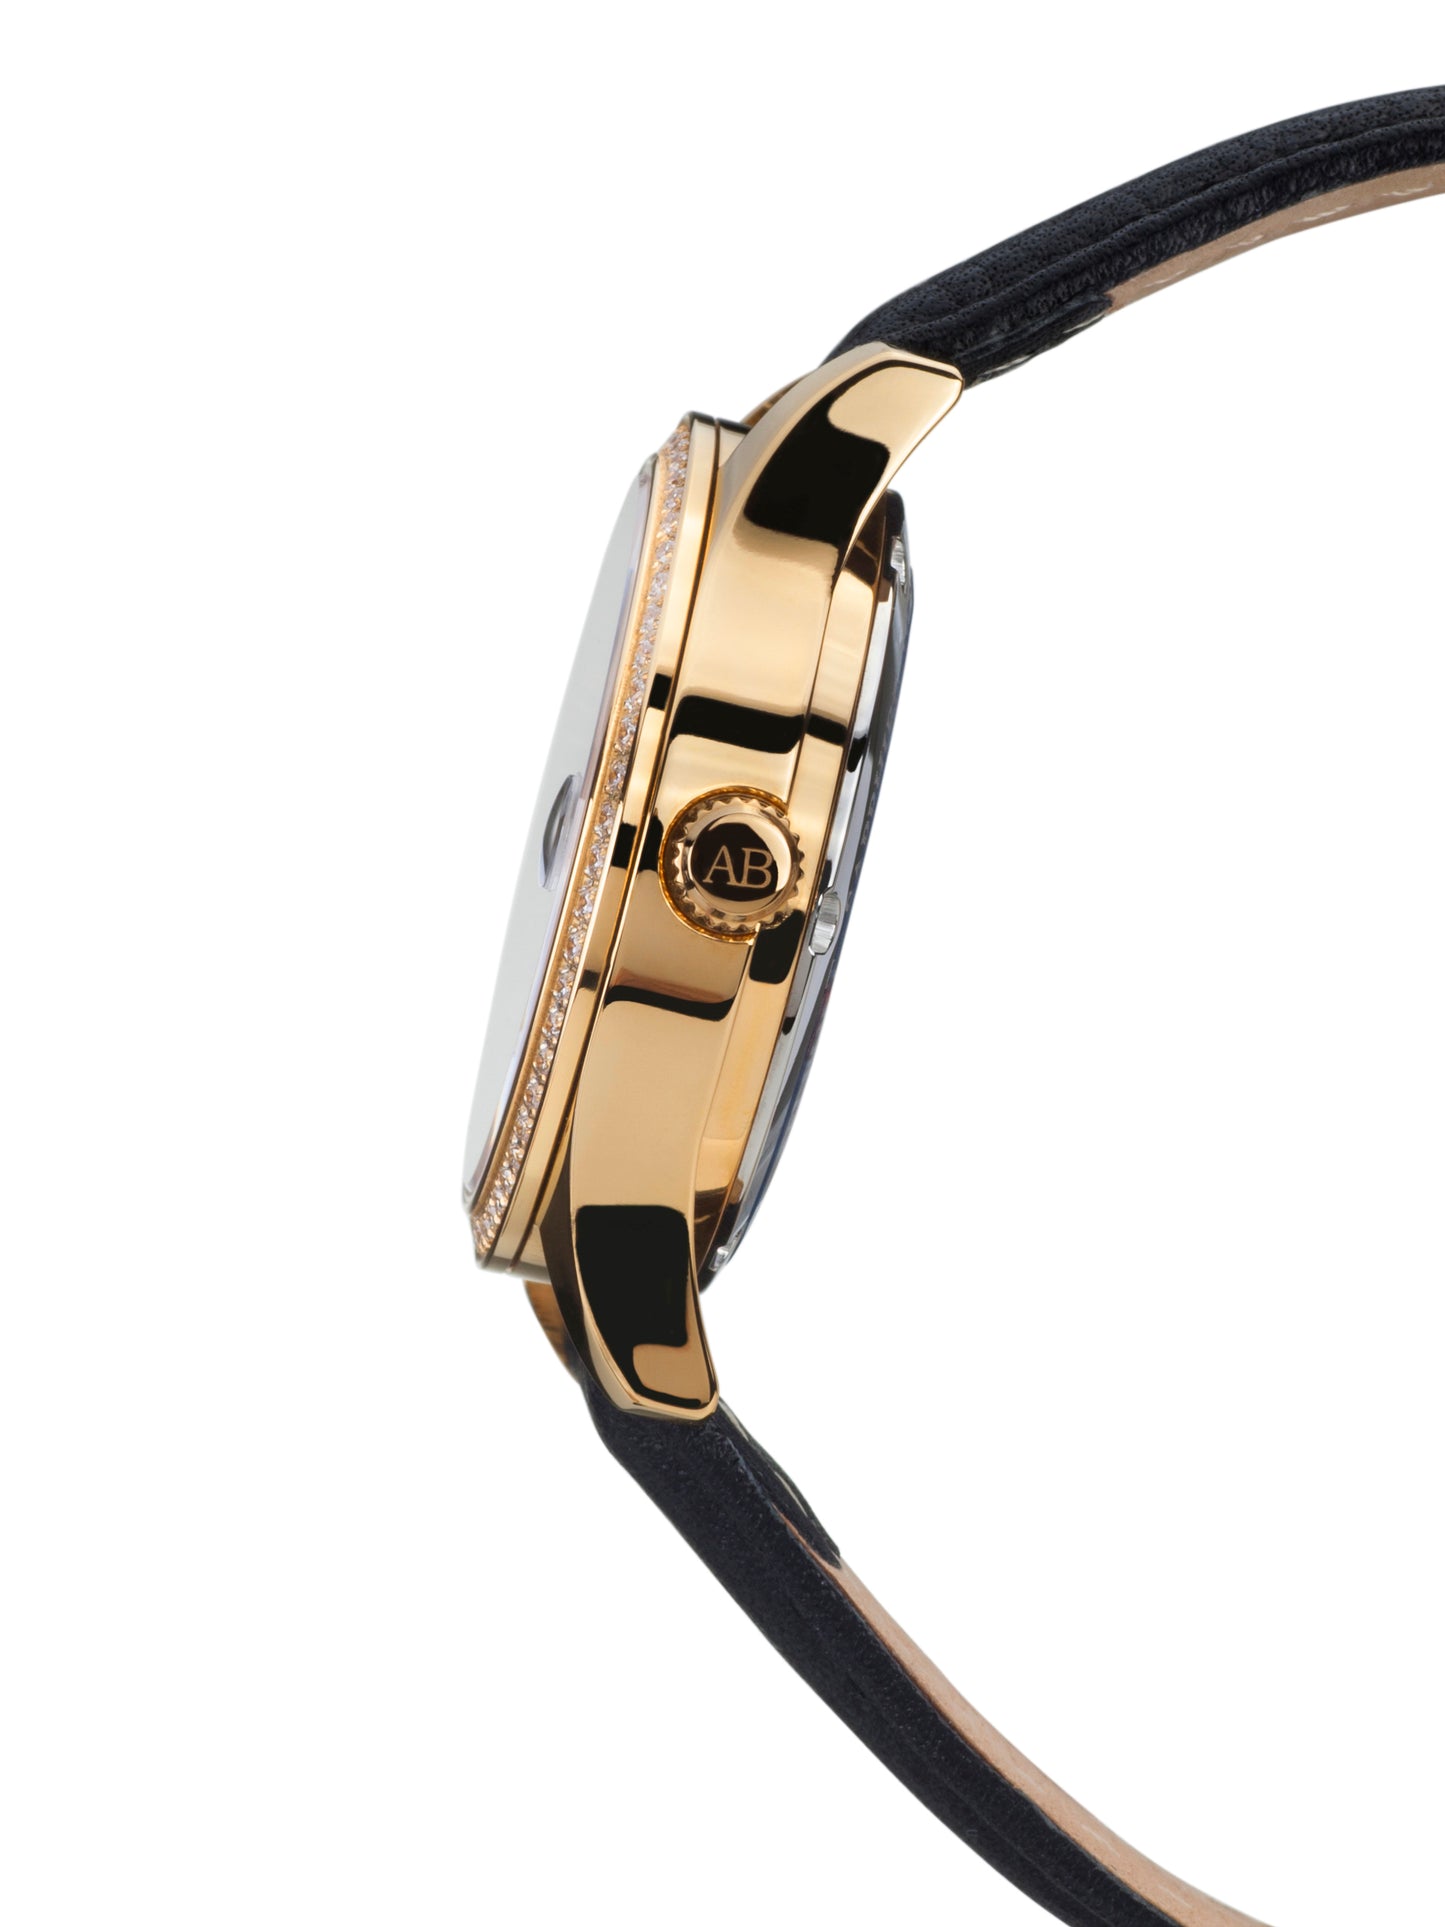 Automatic watches — Déméter — André Belfort — gold black leather